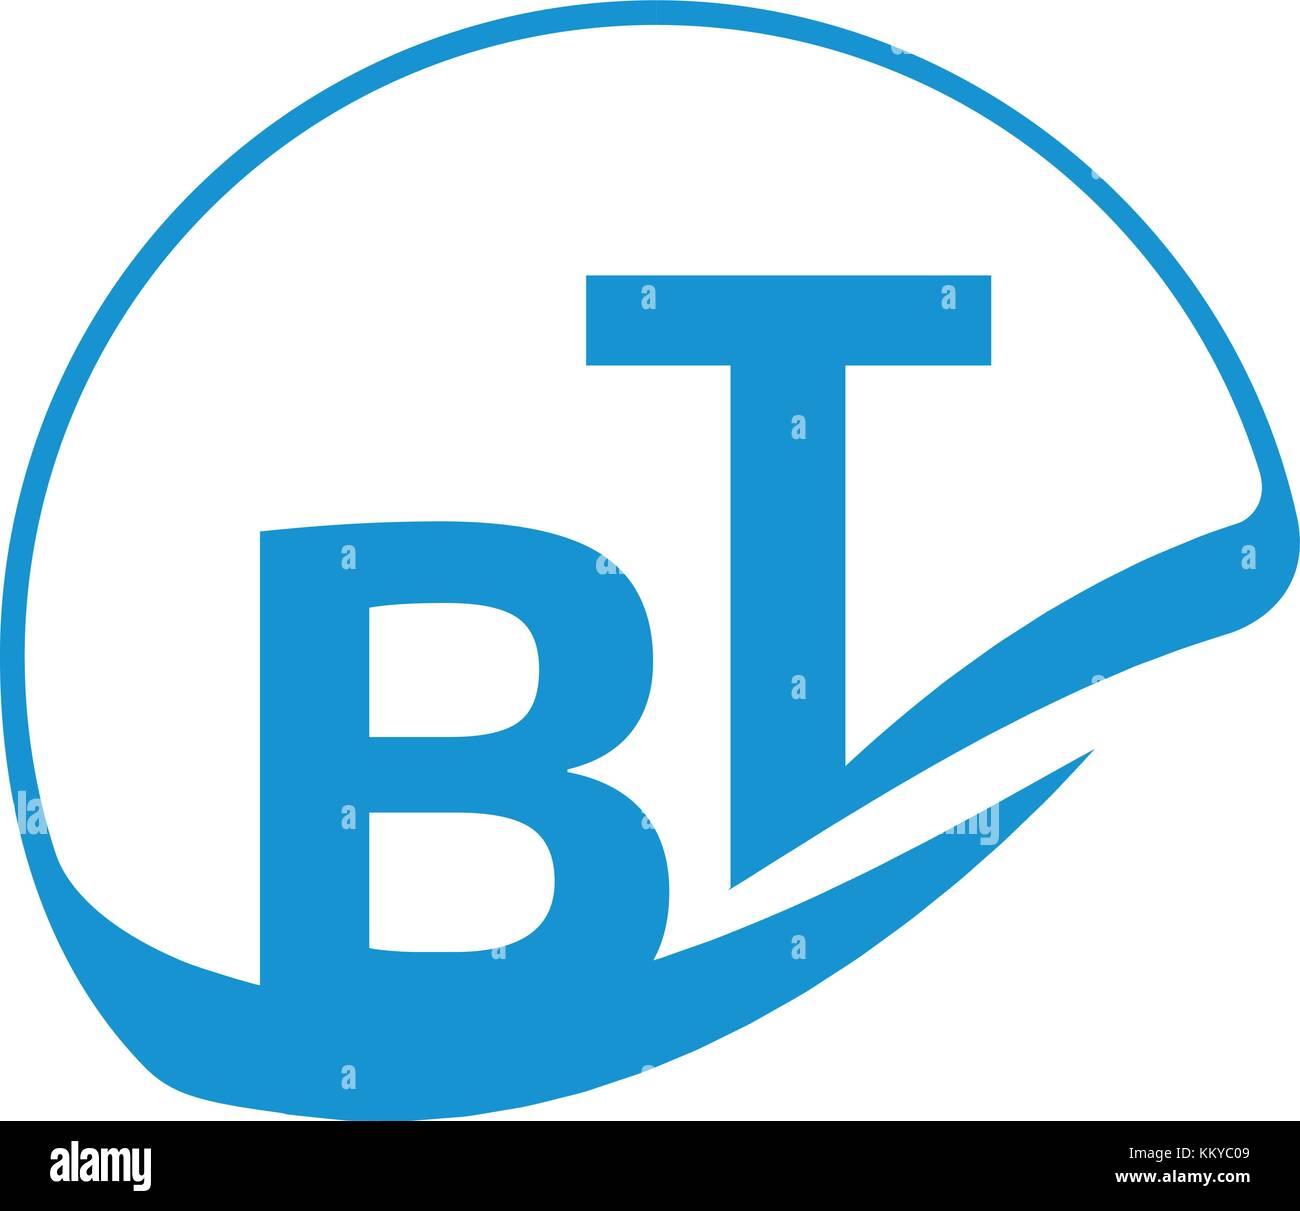 Bt-Logo von Händen Formen unterstützt, die Zusammenarbeit und die blaue Farbe des Vertrauens bezeichnet. Stock Vektor